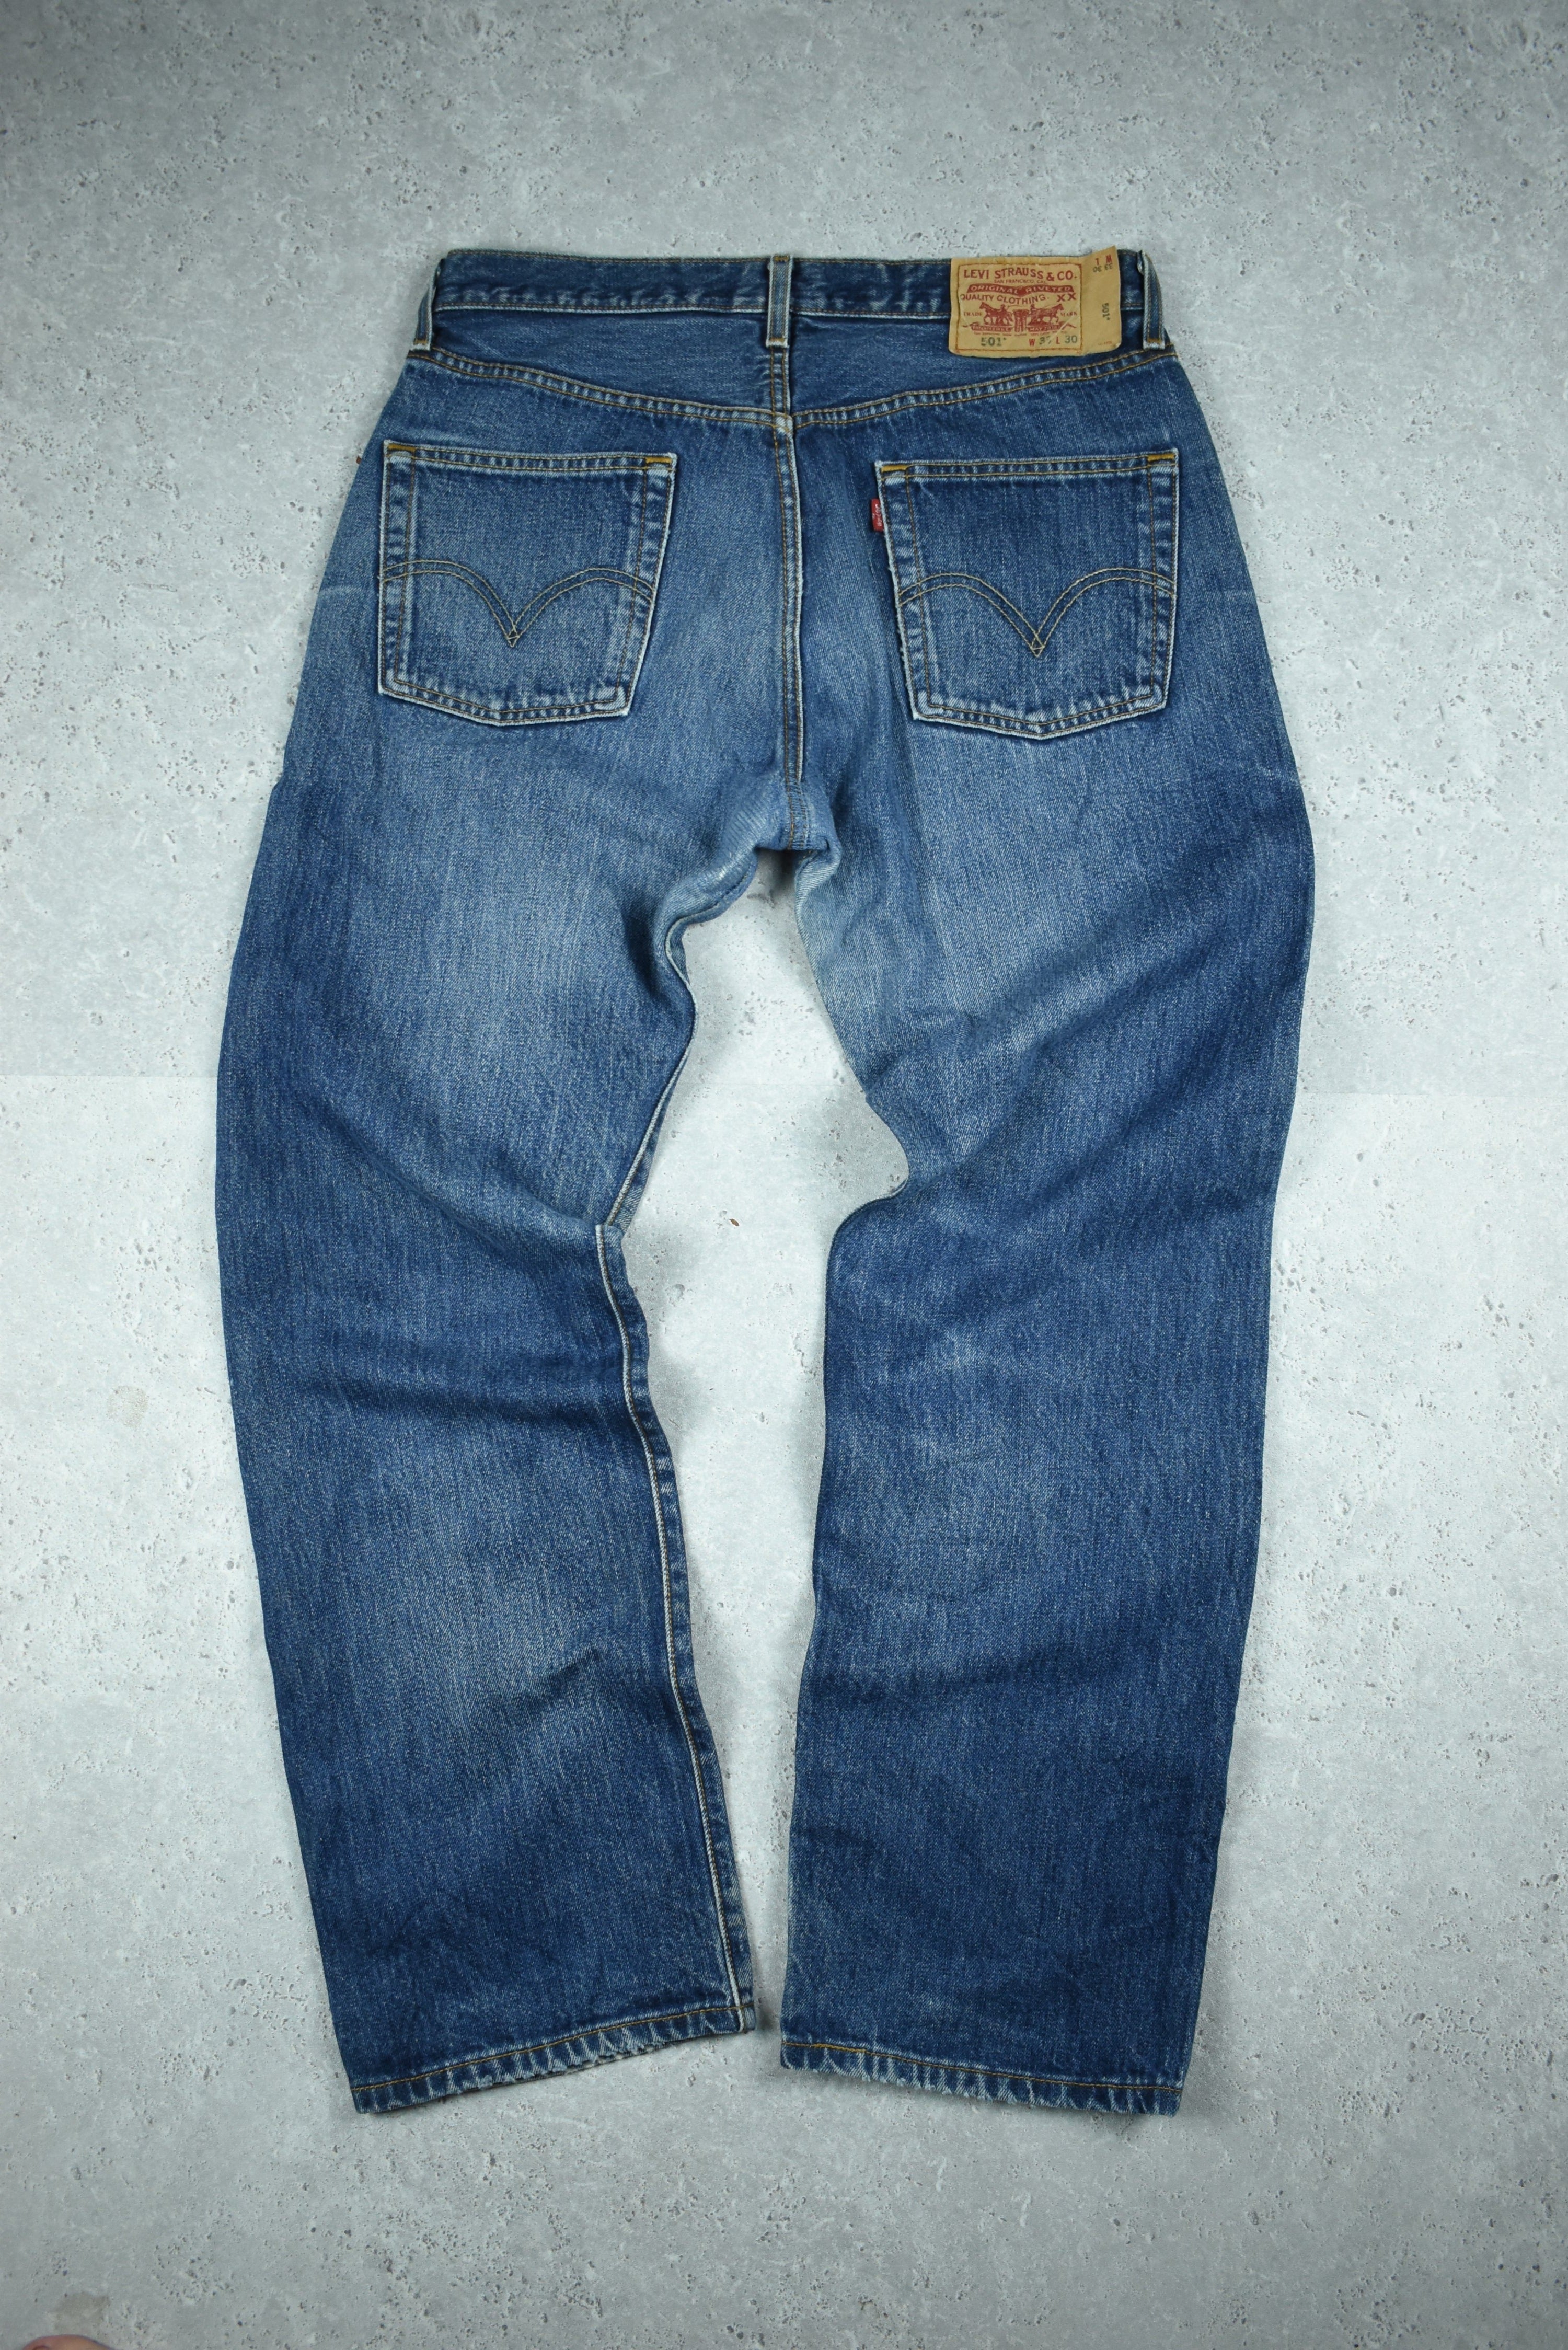 Vintage Levis 501 Denim Jeans 33x30